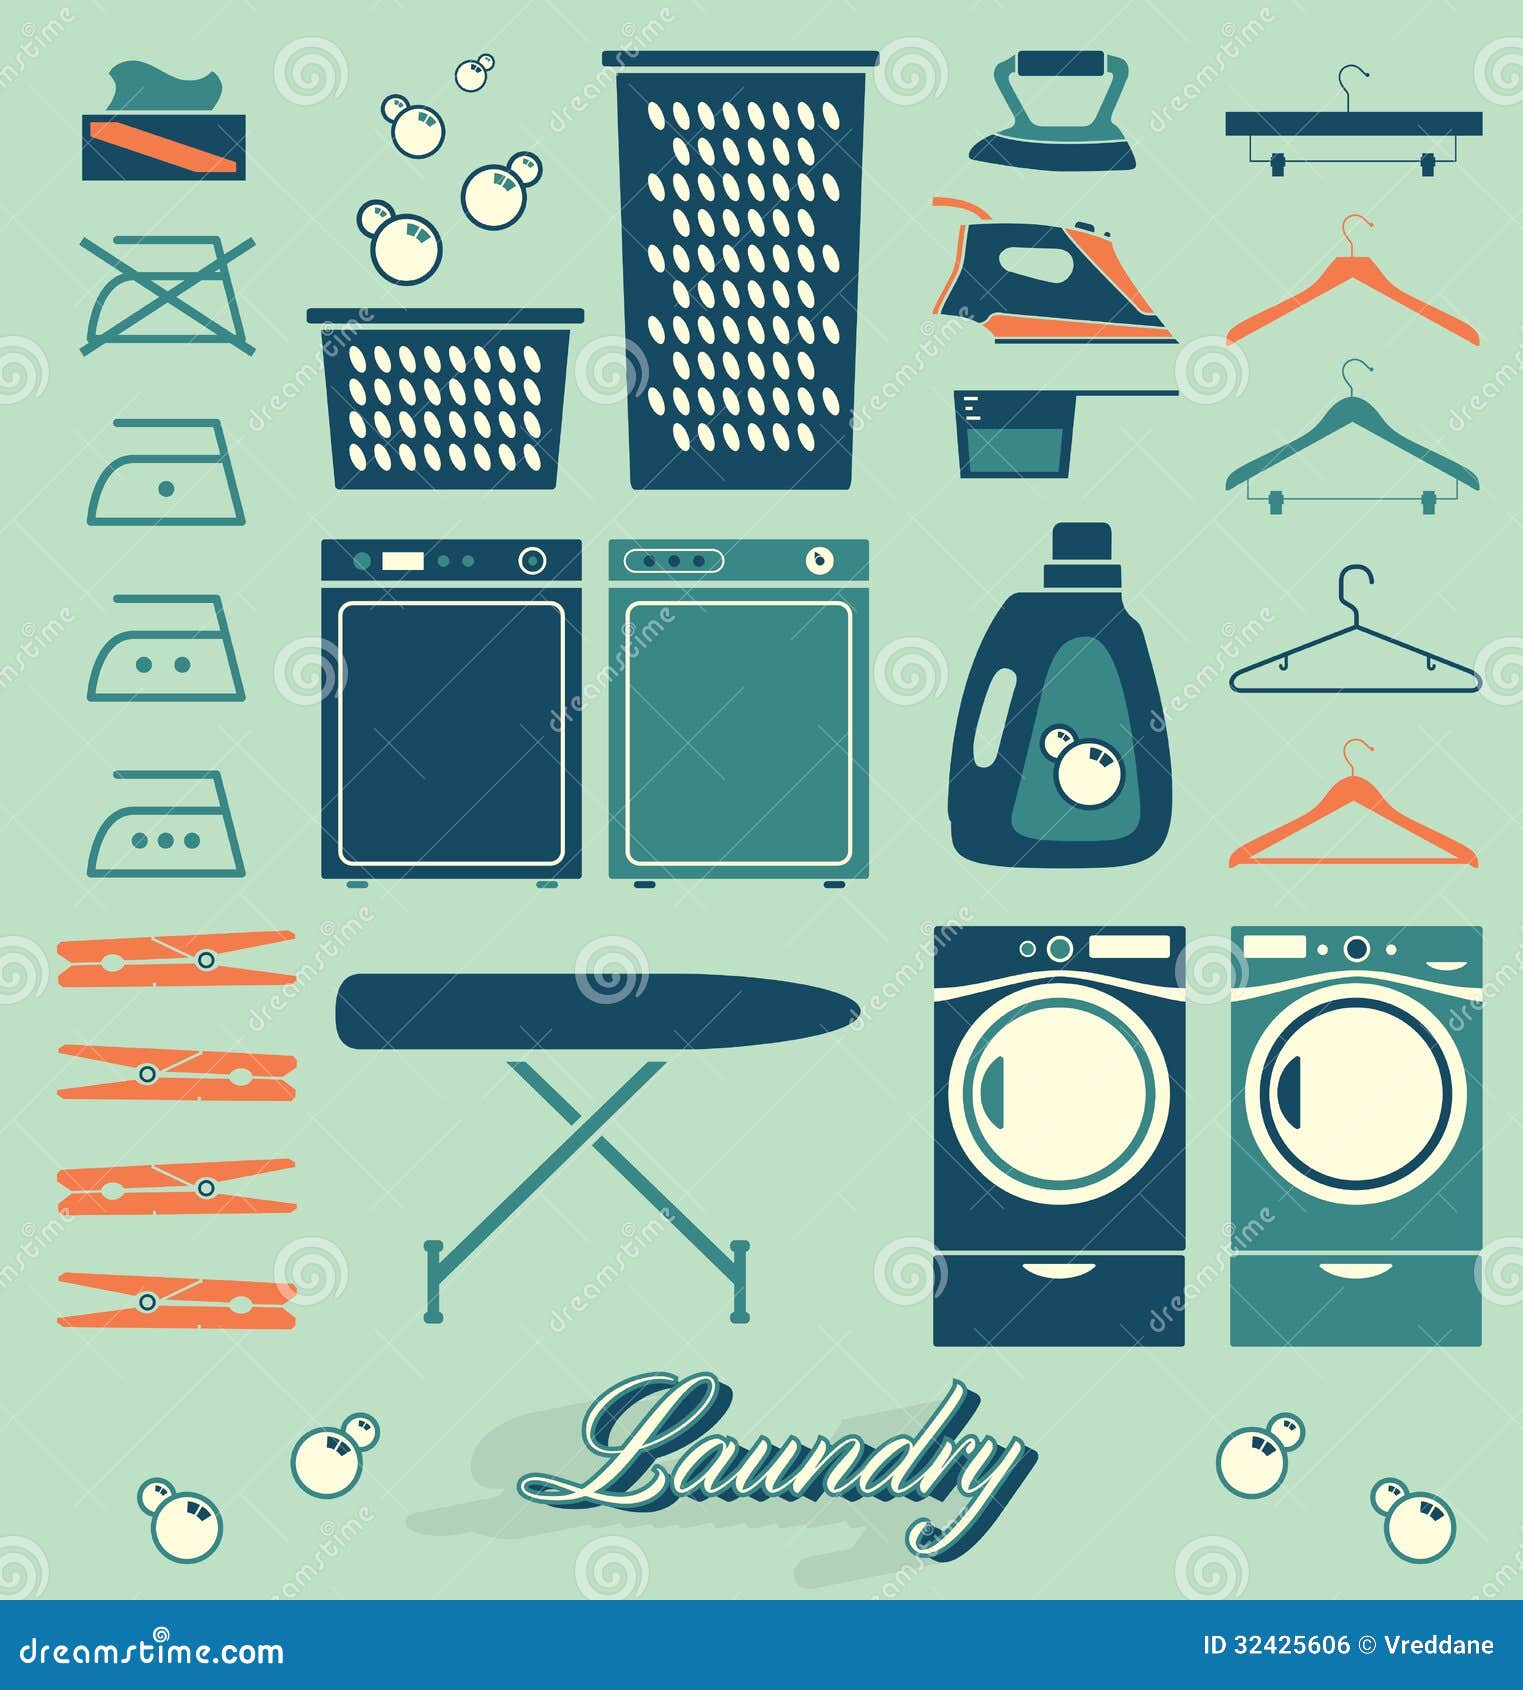 laundry room clipart - photo #20